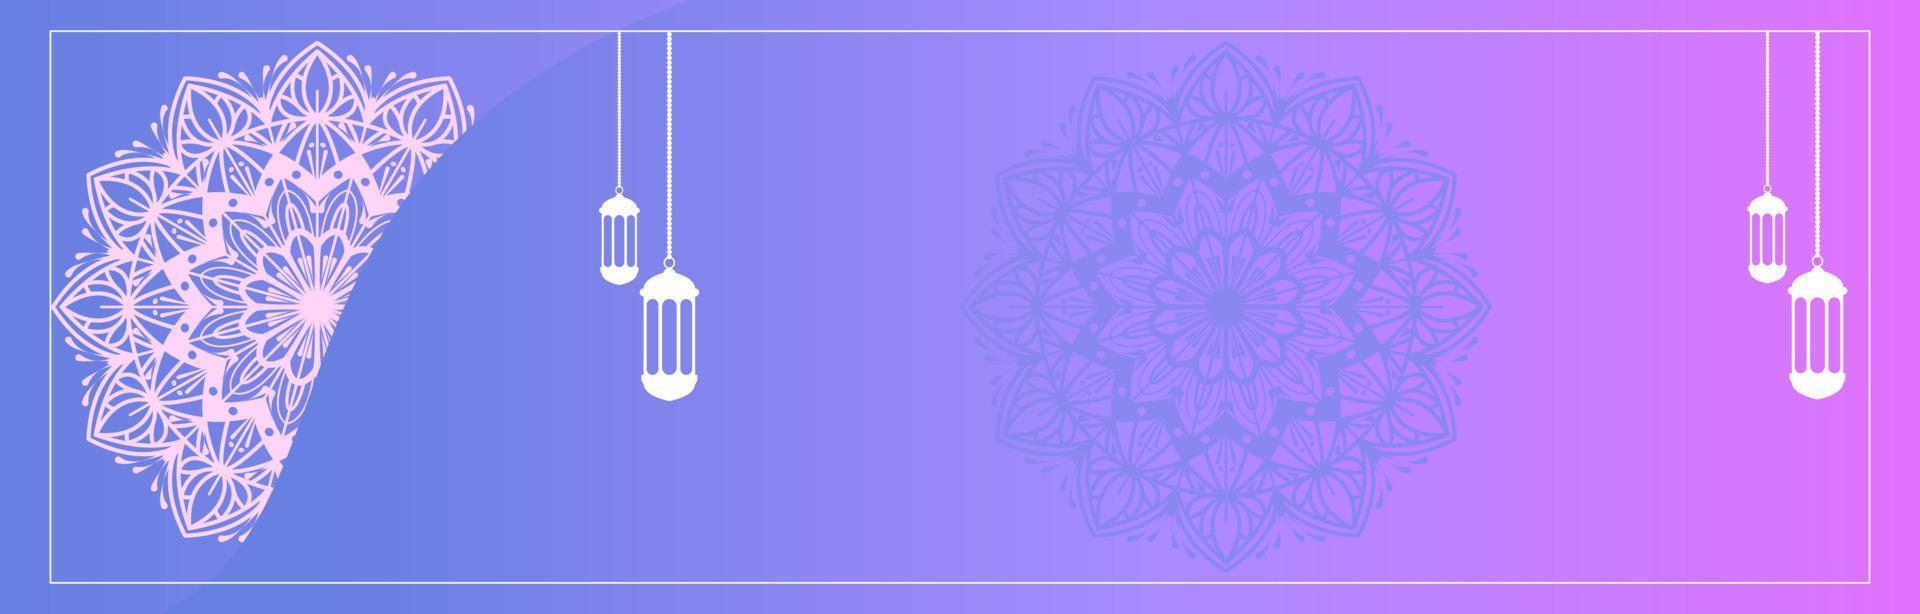 graphiques vectoriels de fond islamique avec des éléments ethniques de mandala arabe pour les bannières eid, ramadan kareem, muharram ou eid mubarak vecteur